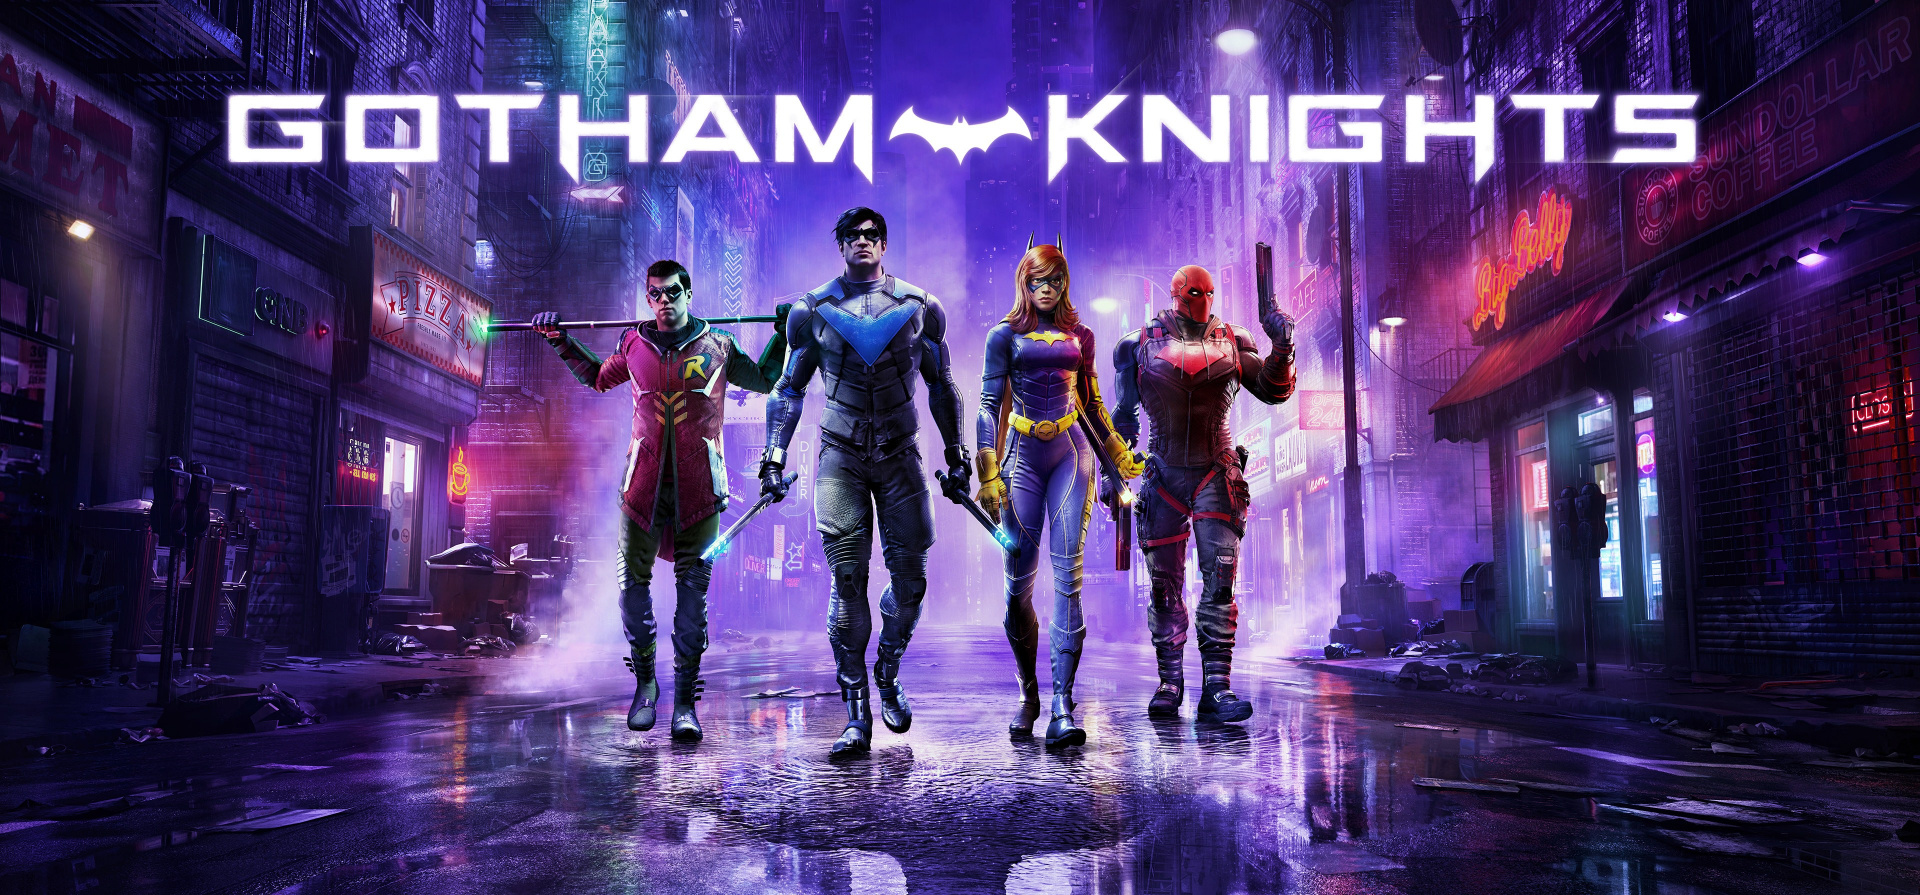 Экшен Gotham Knights получил первый патч для ПК. Из игры удалена система защиты Denuvo